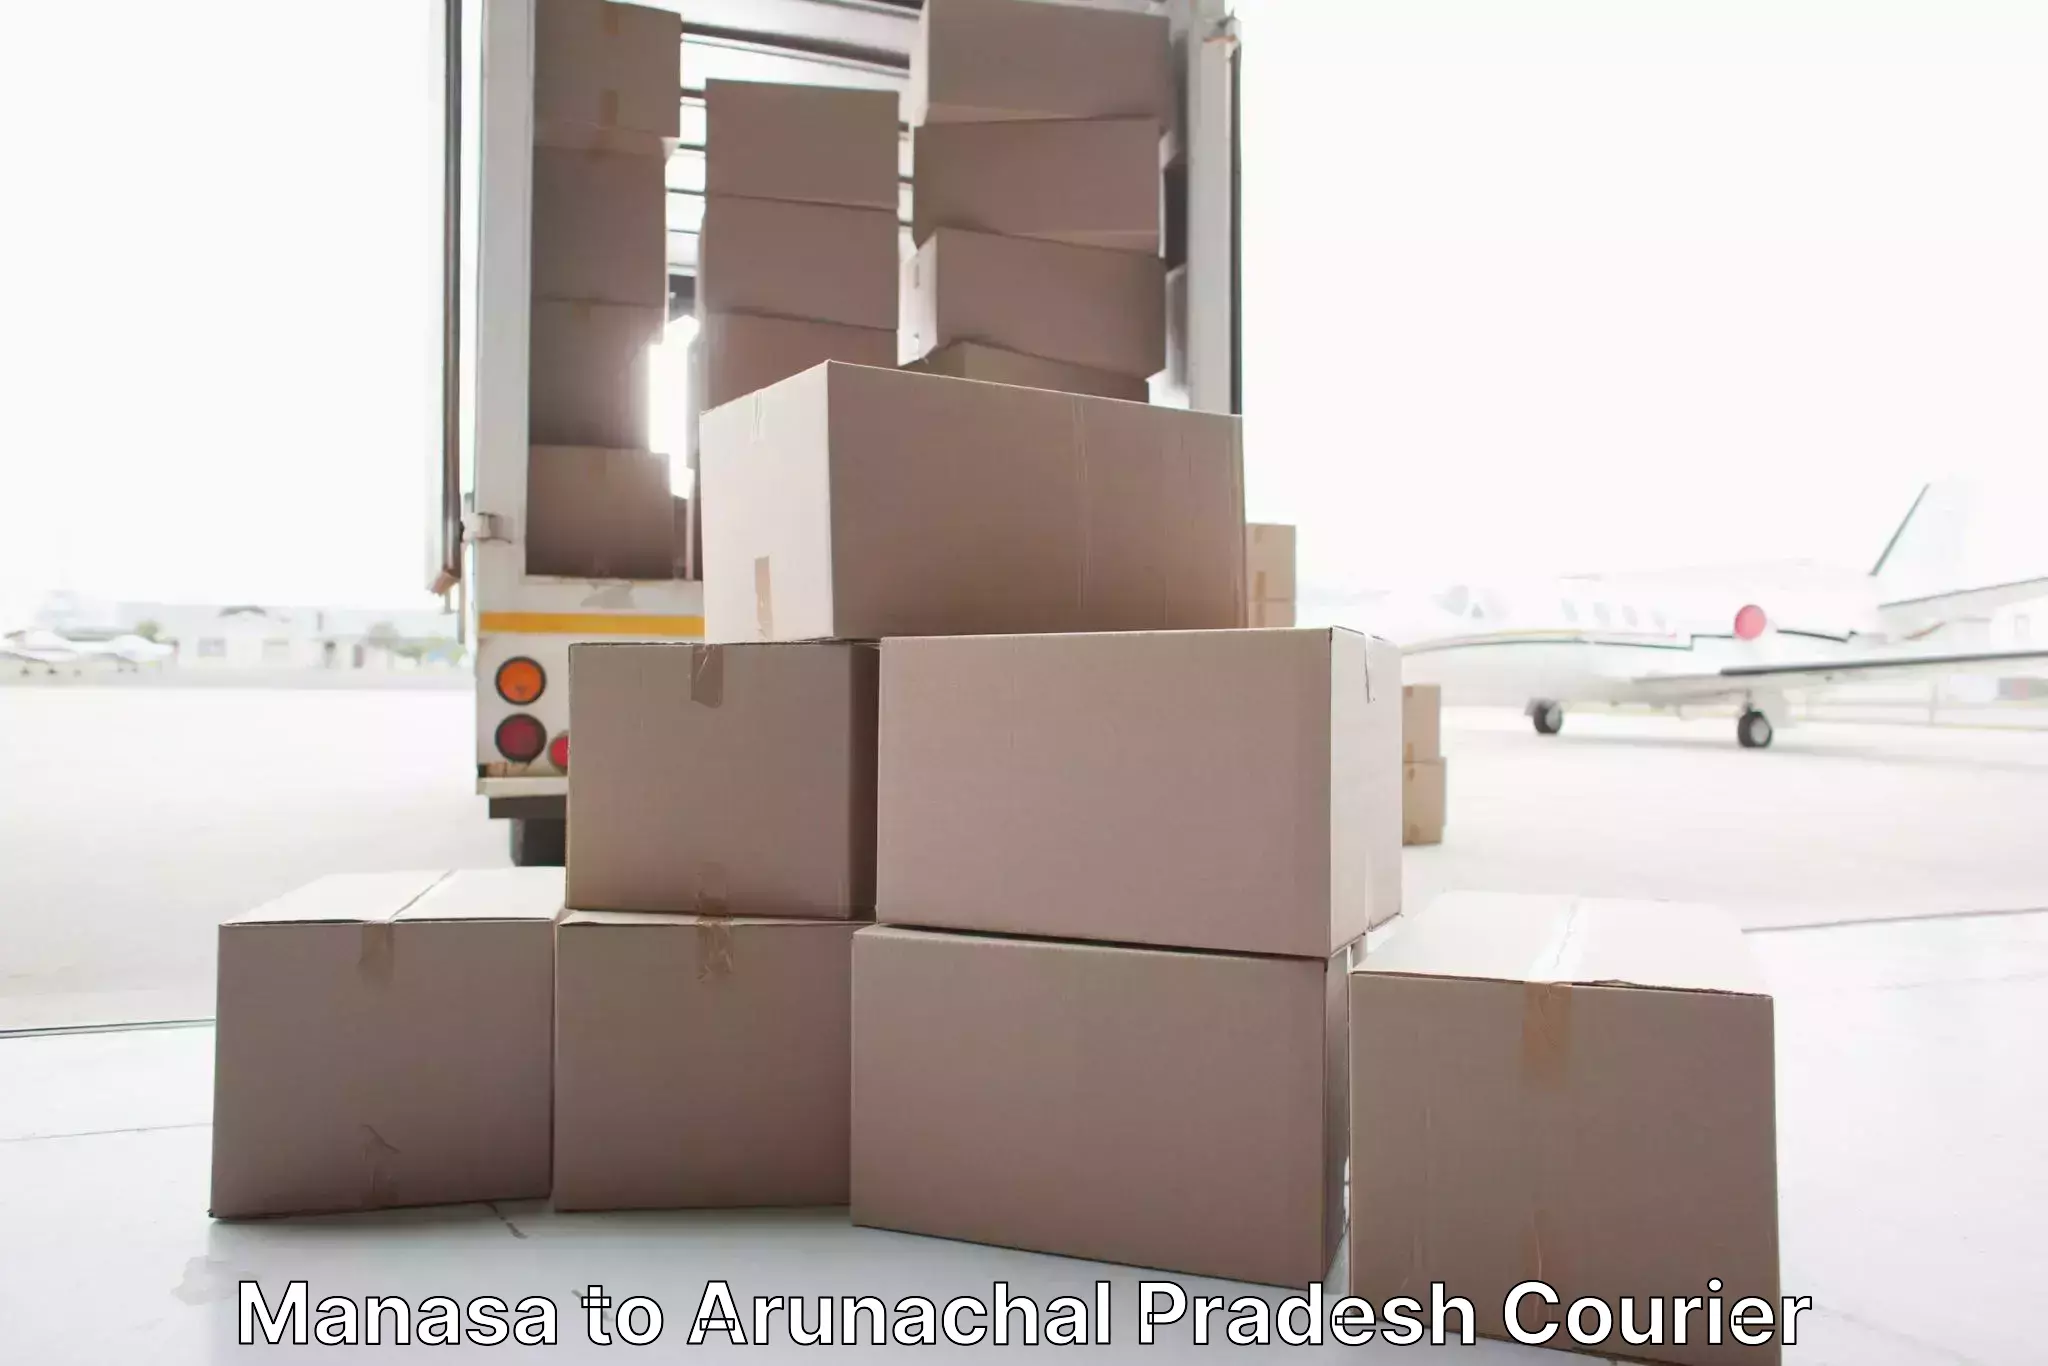 Furniture moving experts Manasa to Arunachal Pradesh